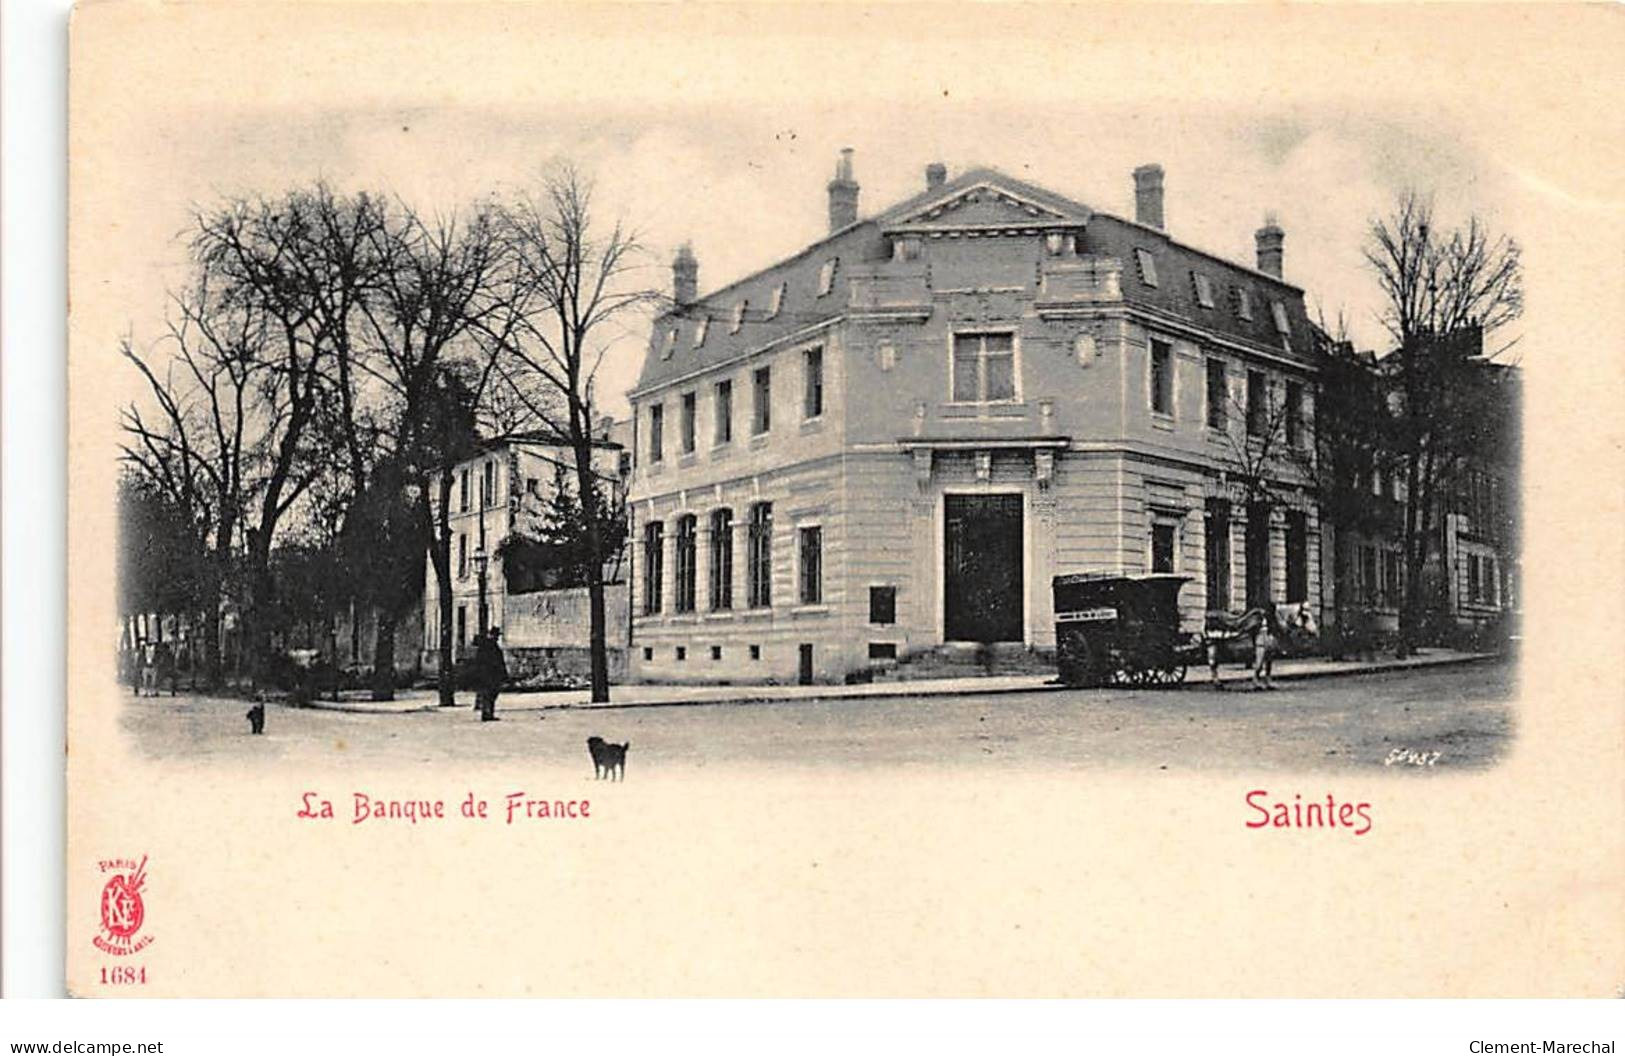 BANQUE DE FRANCE - SAINTES - Tres Bon Etat - Banche